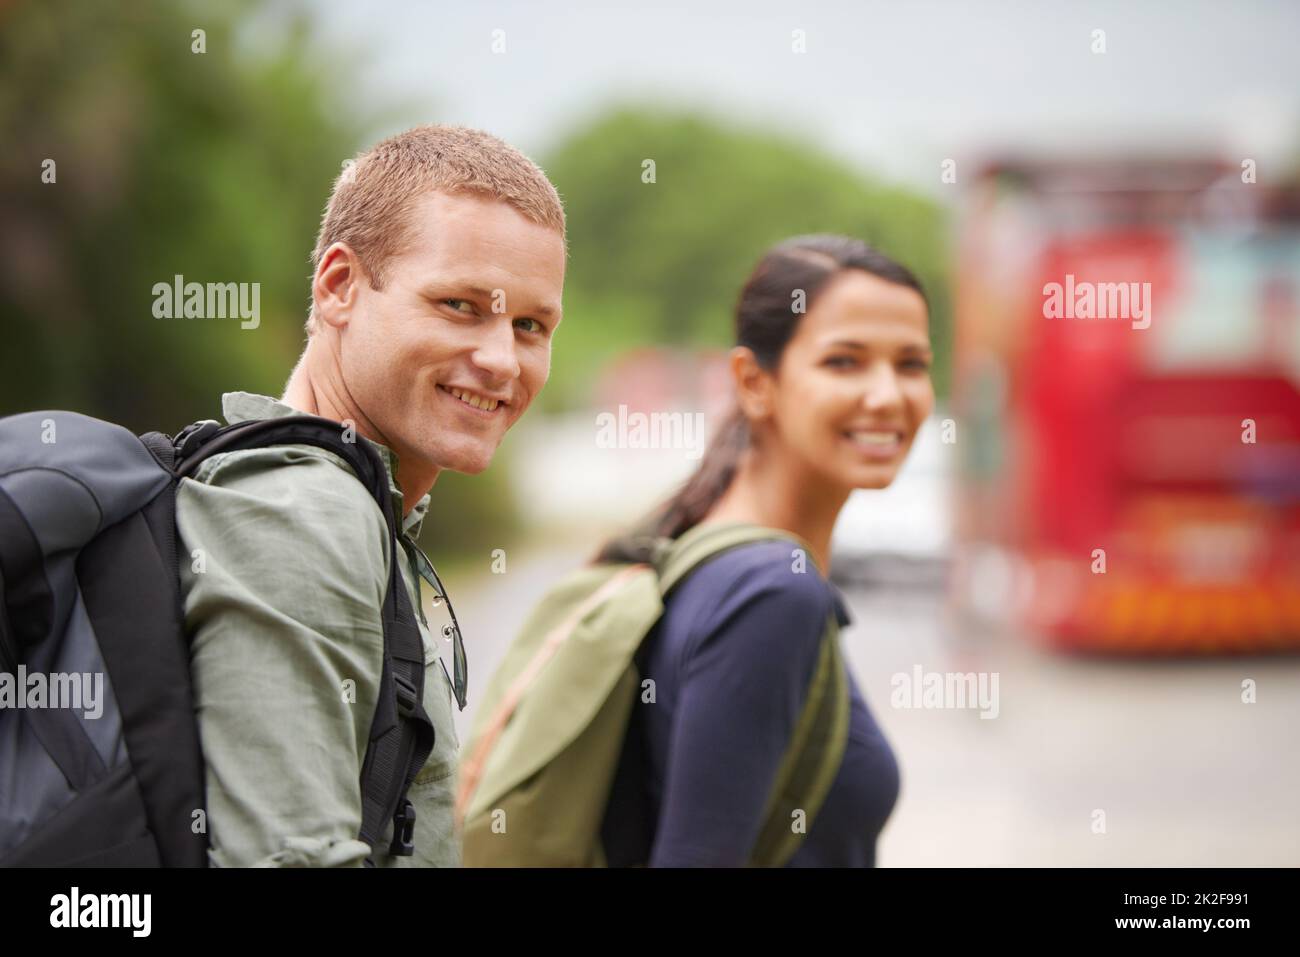 Man braucht keine Magie, um zu entäuschen, nur ein Ziel Ein Reisender lächelt an der Kamera, während er auf den Bus wartet. Stockfoto